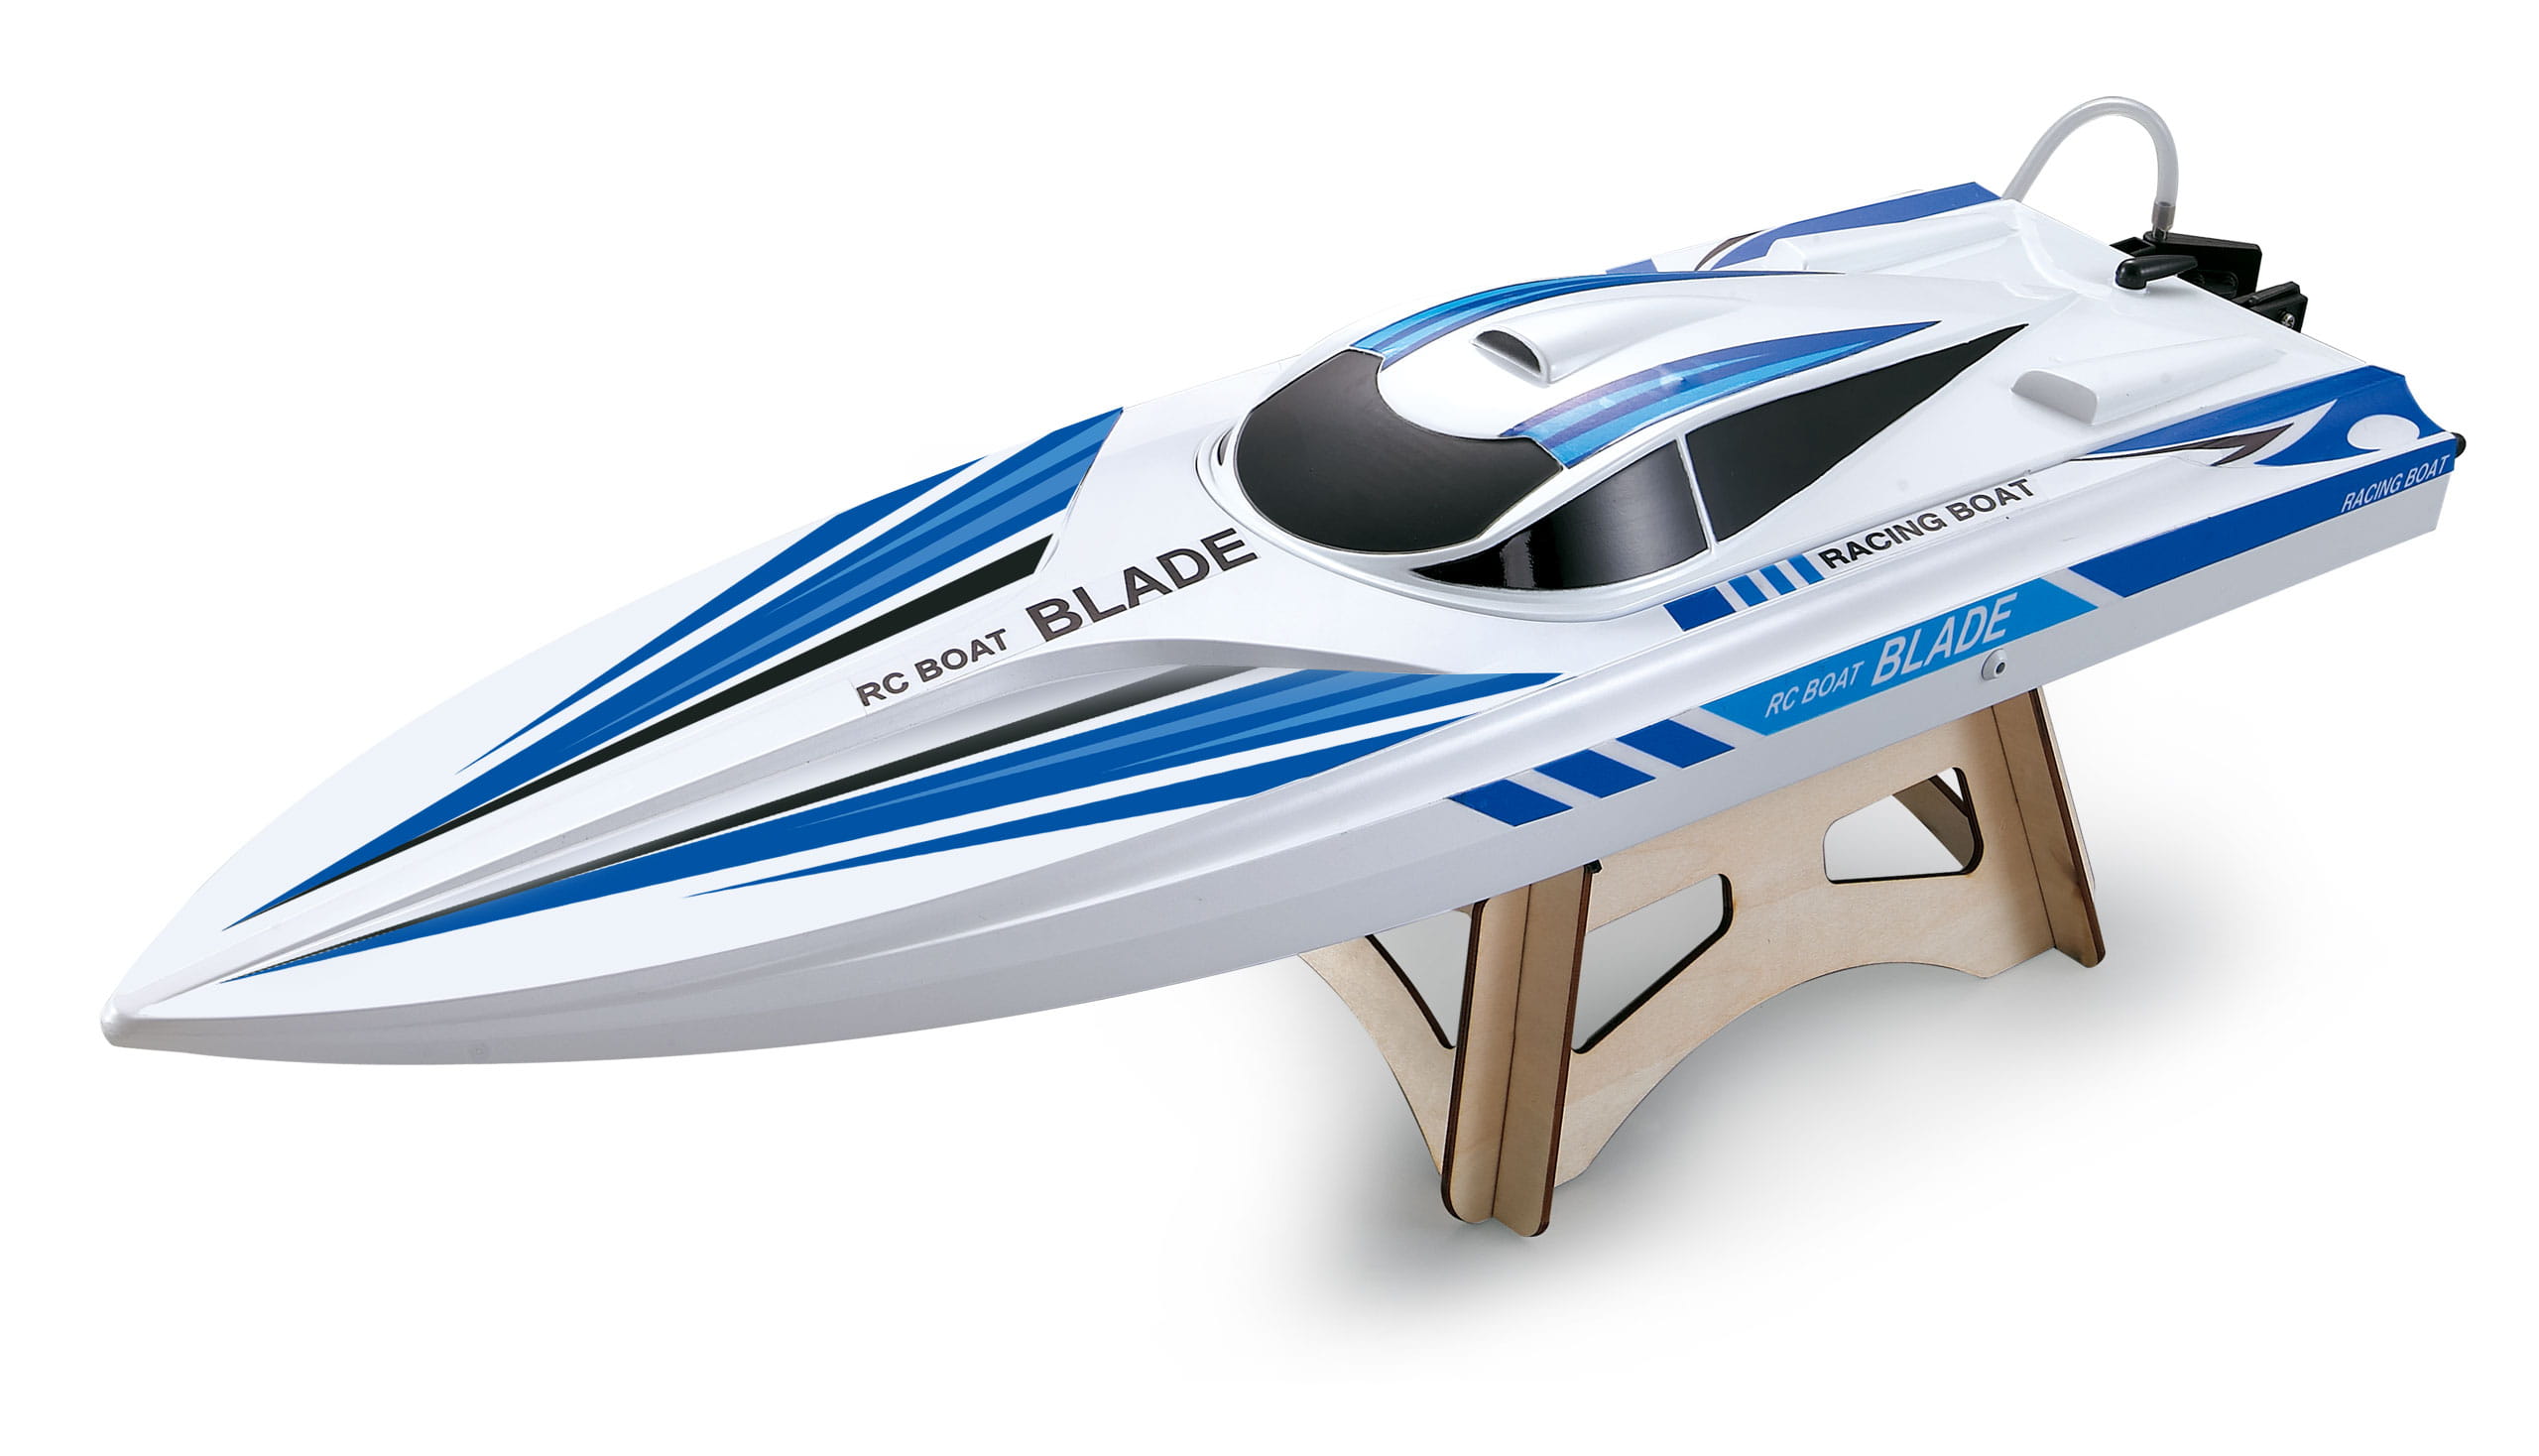 Amewi Speedboot Blade Mono weiß/blau 2,4 GHz bis 40km/h